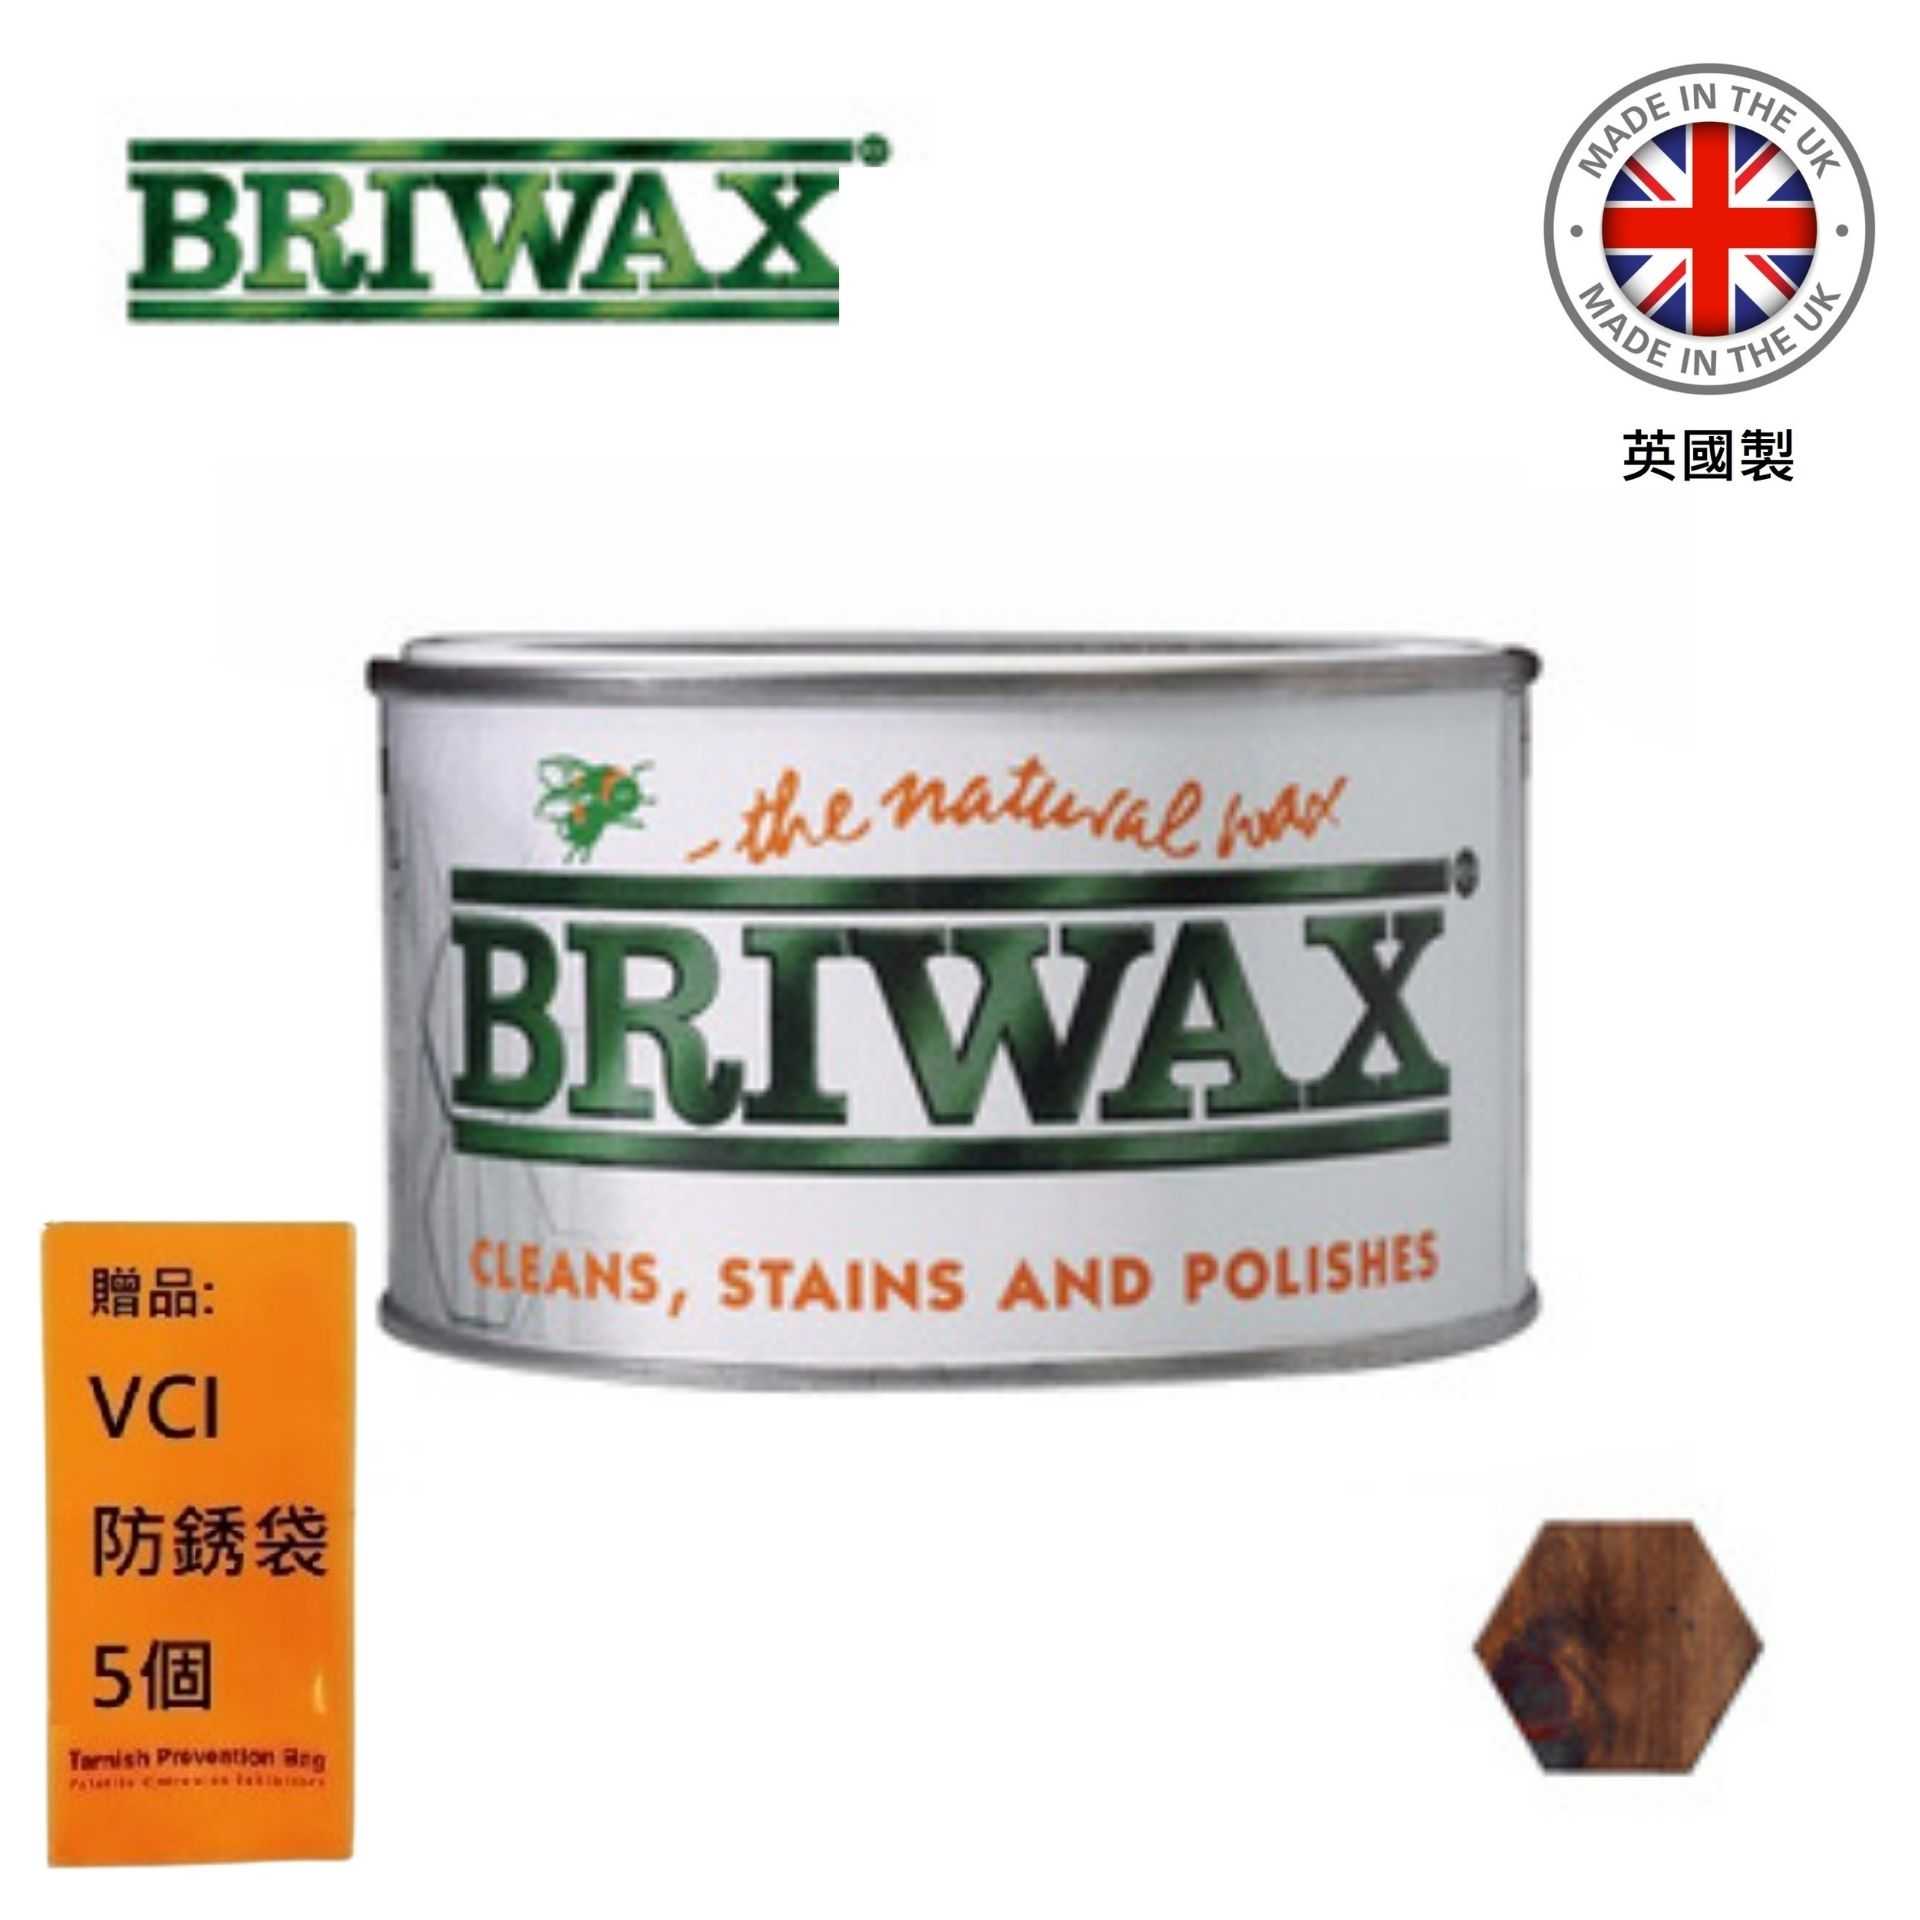 【英國Briwax】拋光上色蠟-核桃木色 370g 其出色的品質及無可取代的產品特性